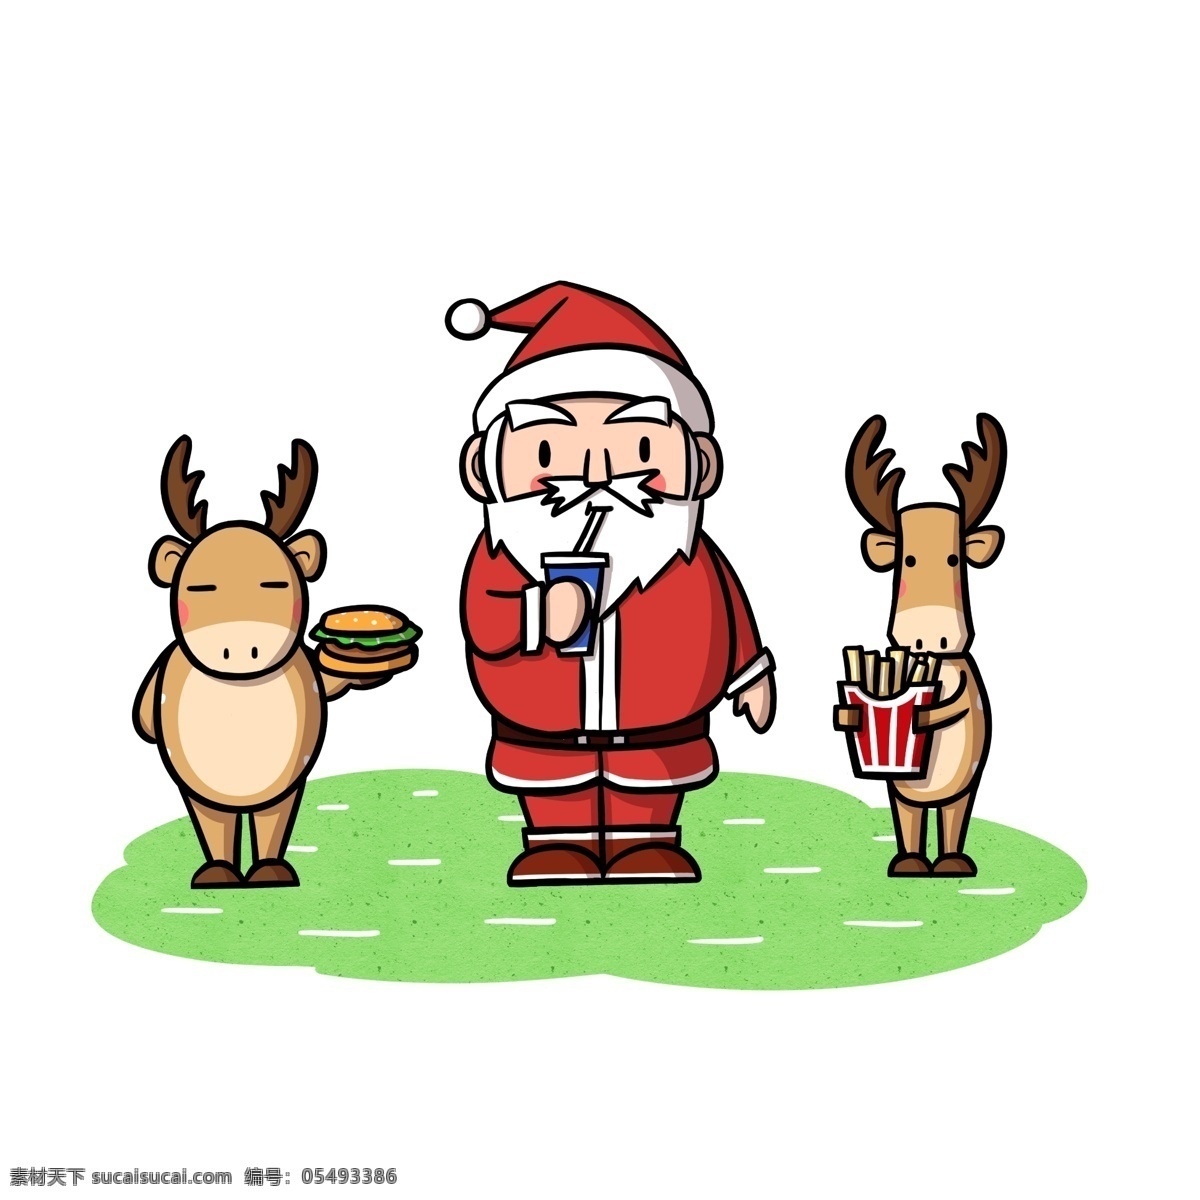 圣诞老人 驯鹿 吃 东西 透明 底 christmas 卡通圣诞老人 卡通驯鹿 圣诞快乐 圣诞节快乐 圣诞节 冬季 卡通 节日